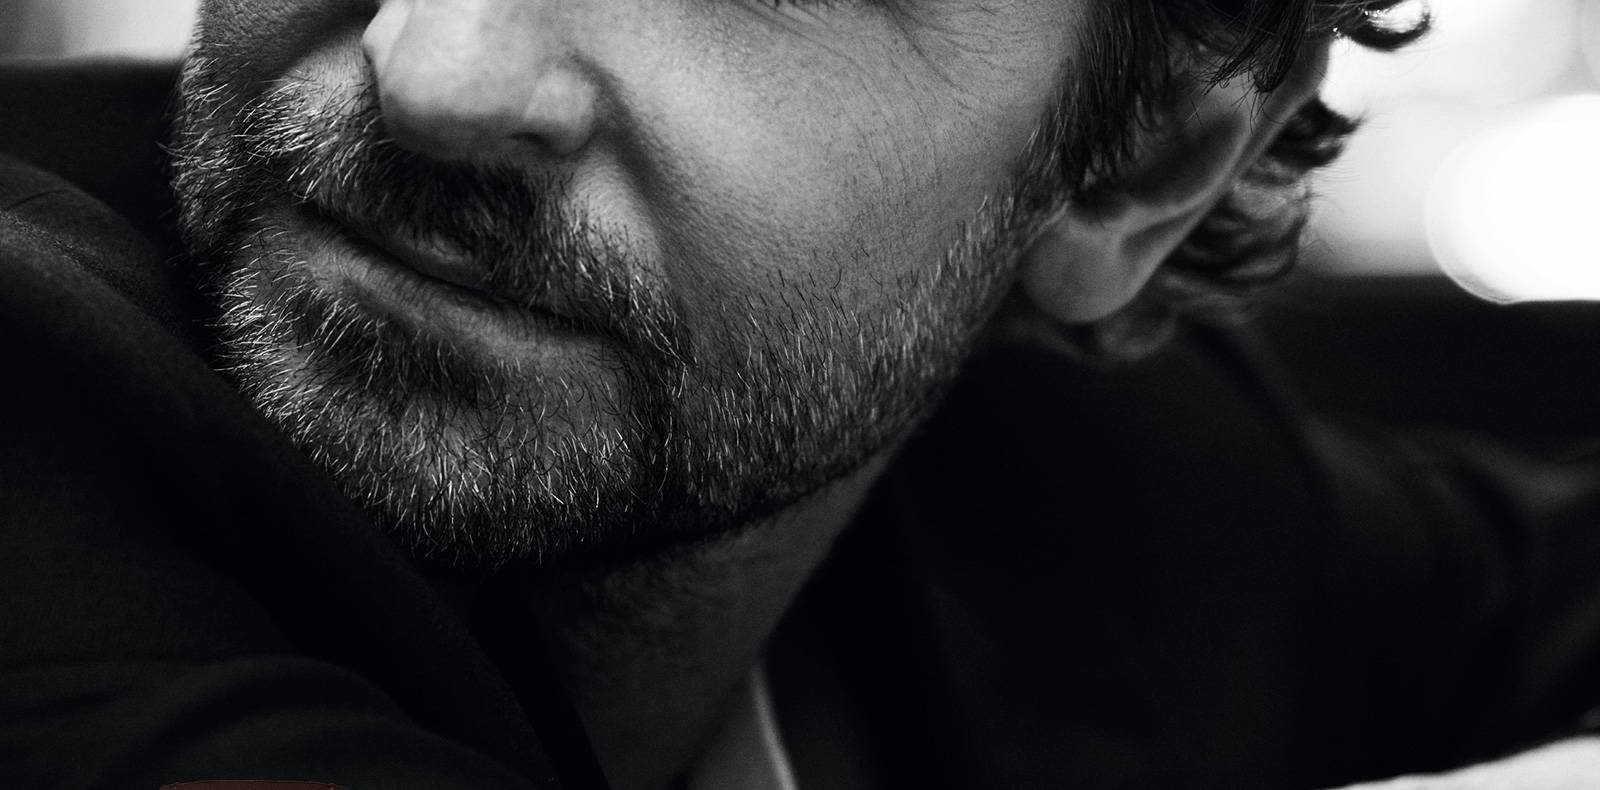 Bradley Cooper Louis Vuitton Tambour Twenty